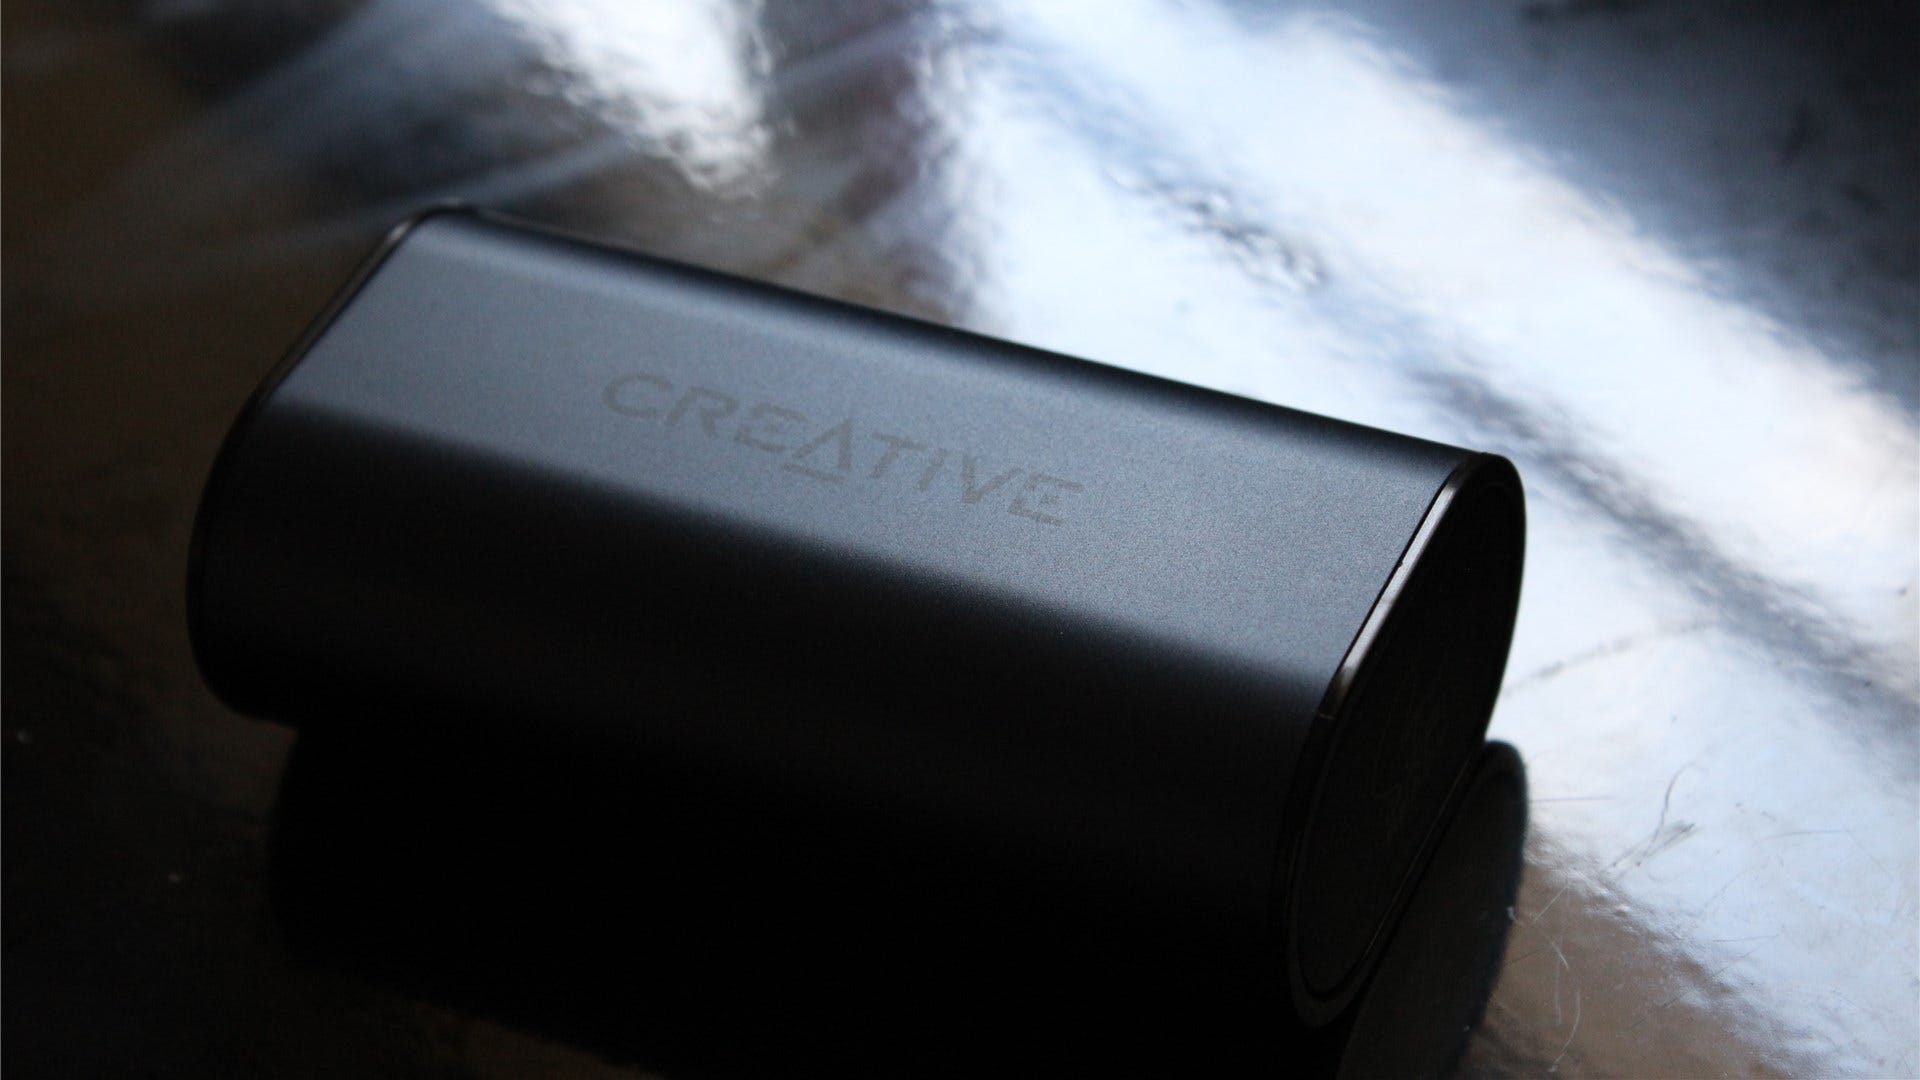 Creative Outlier Air v2 bärväska i svagt ljus på en blank svart bakgrund